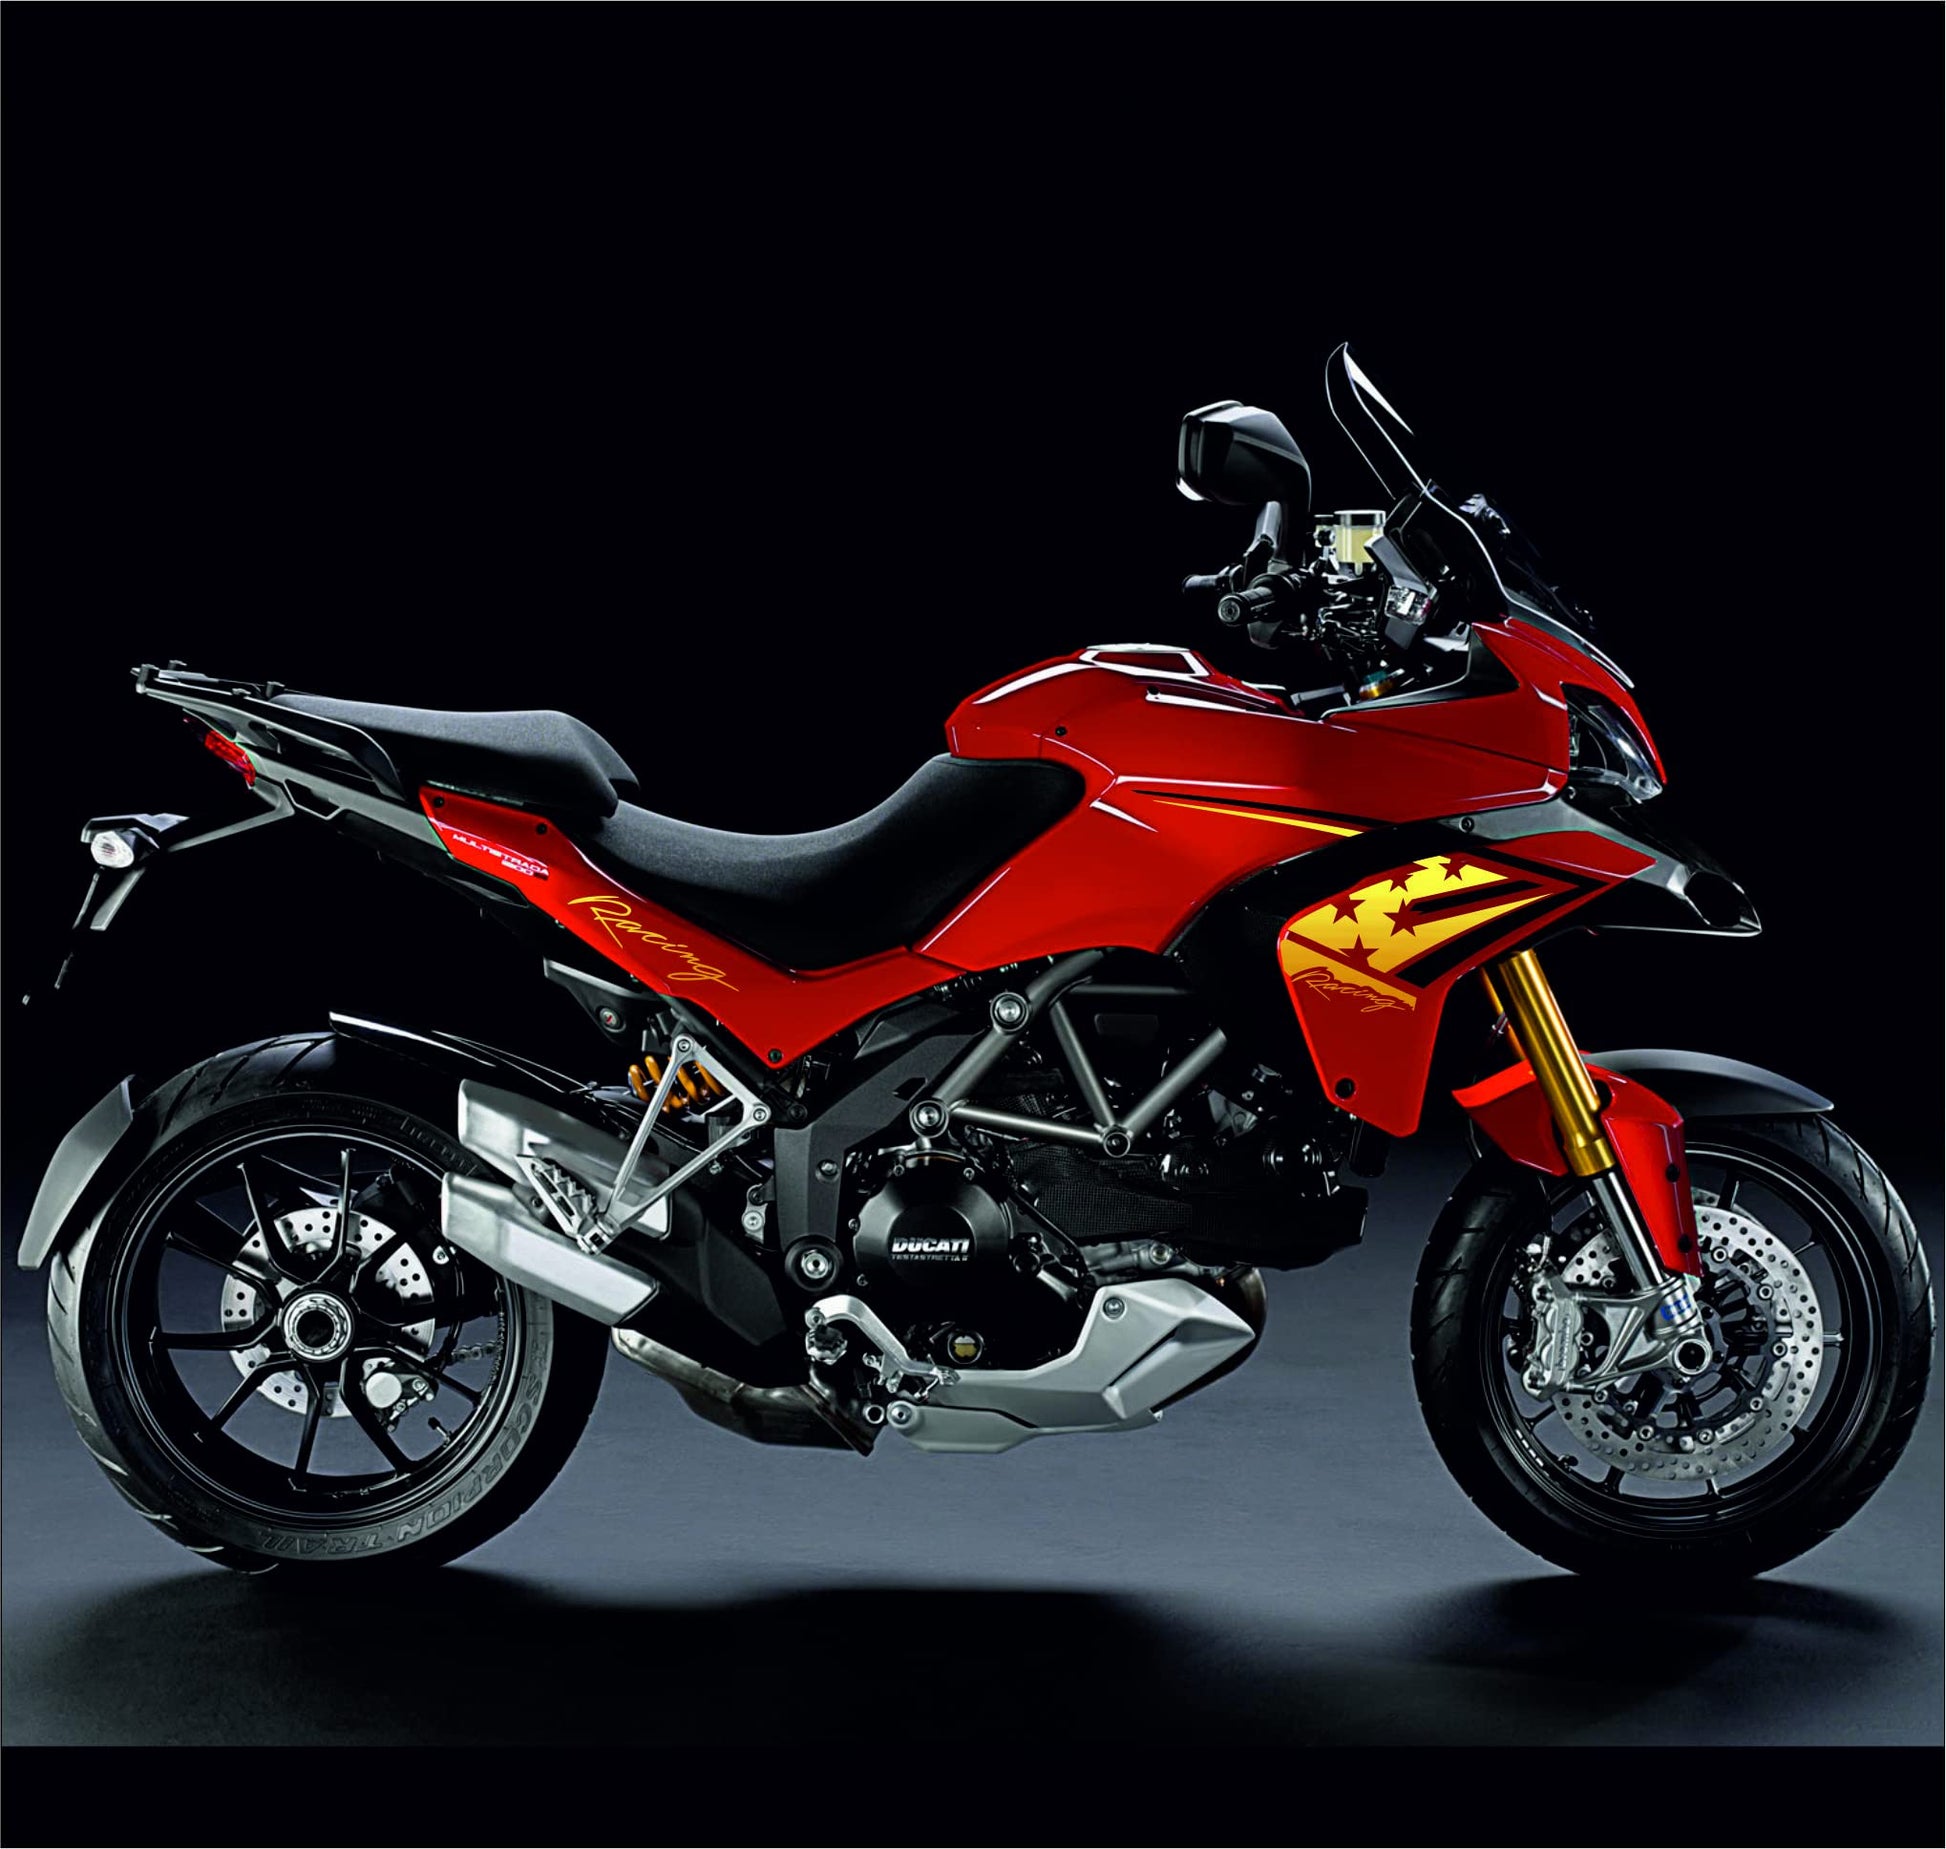 DualColorStampe Adesivi Compatibili con Ducati Multistrada 1200 stickers carena moto decal - Colore a scelta COD.M0155 a €39.99 solo da DualColorStampe